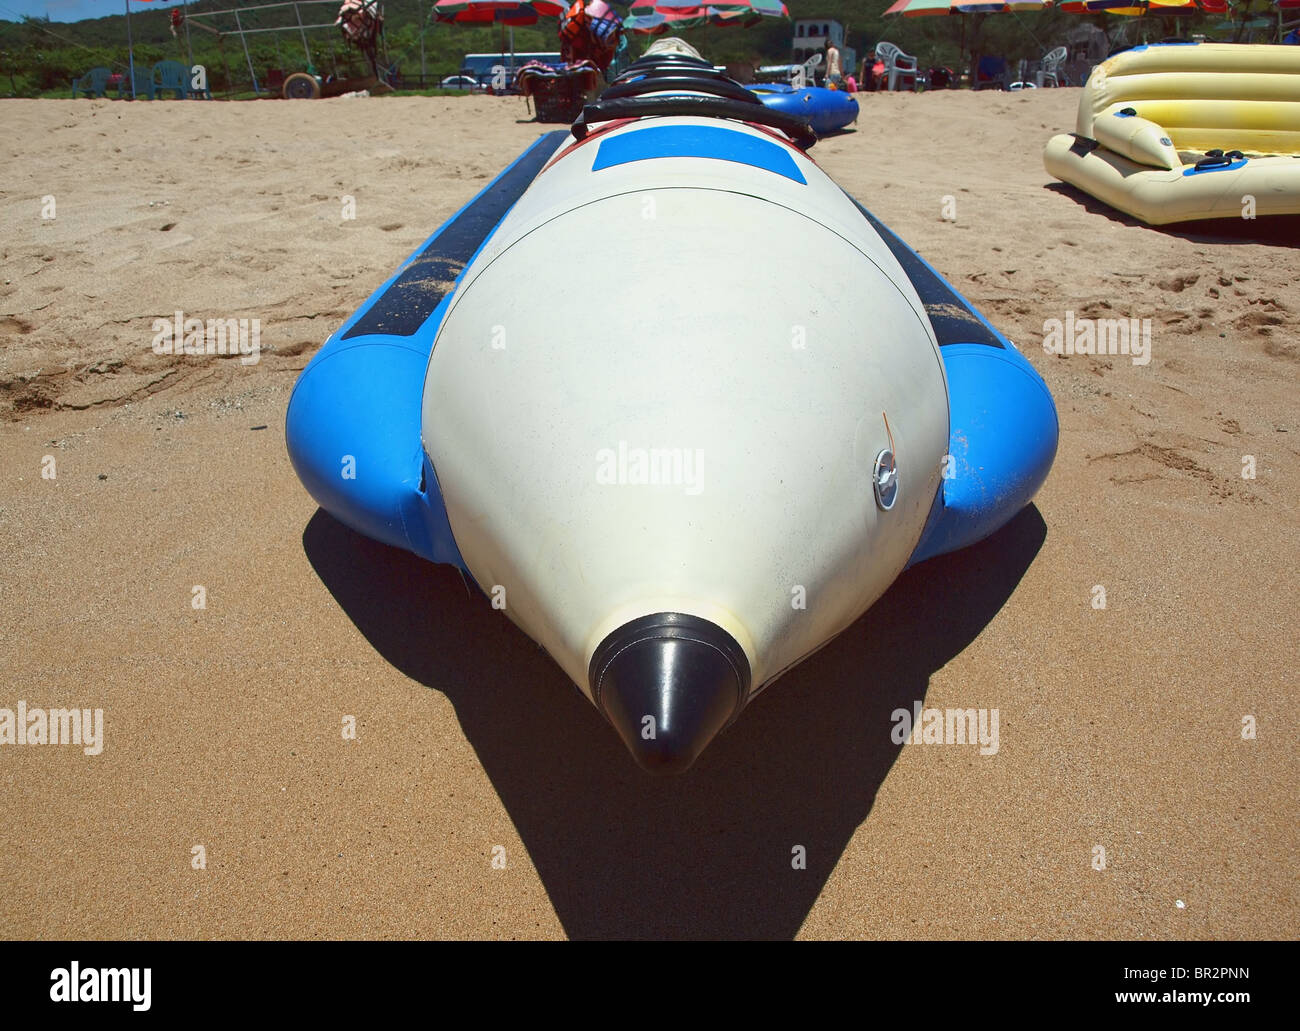 Aufblasbares Wasserfahrzeug sitzt an einem Sandstrand. Diese Art von Boot nennt man auch Banana-Boat. Stockfoto